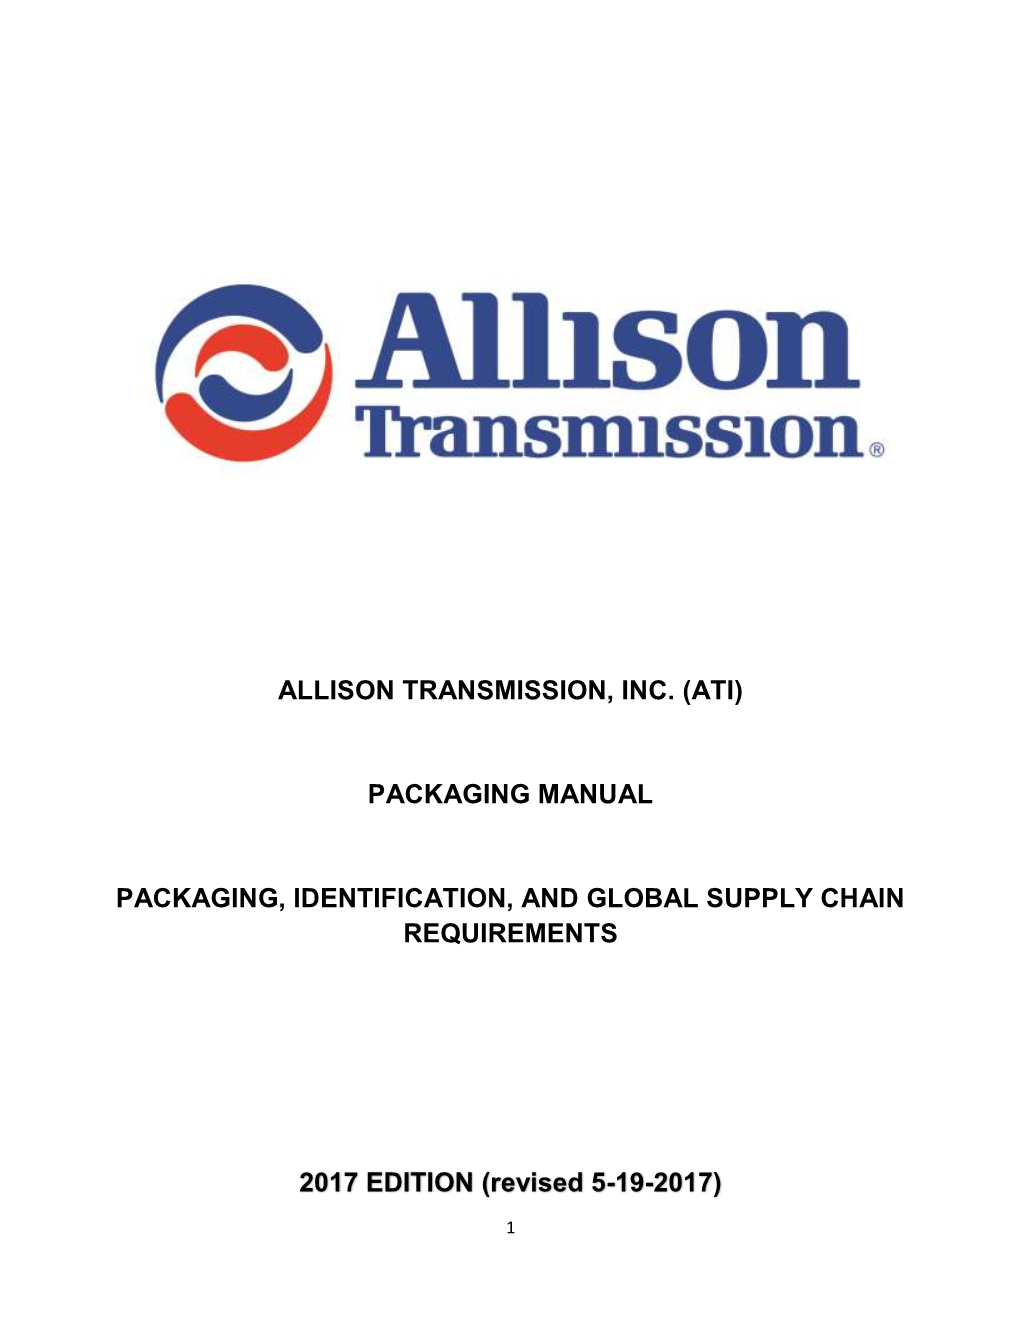 Allison Transmission, Inc. (Ati) Packaging Manual